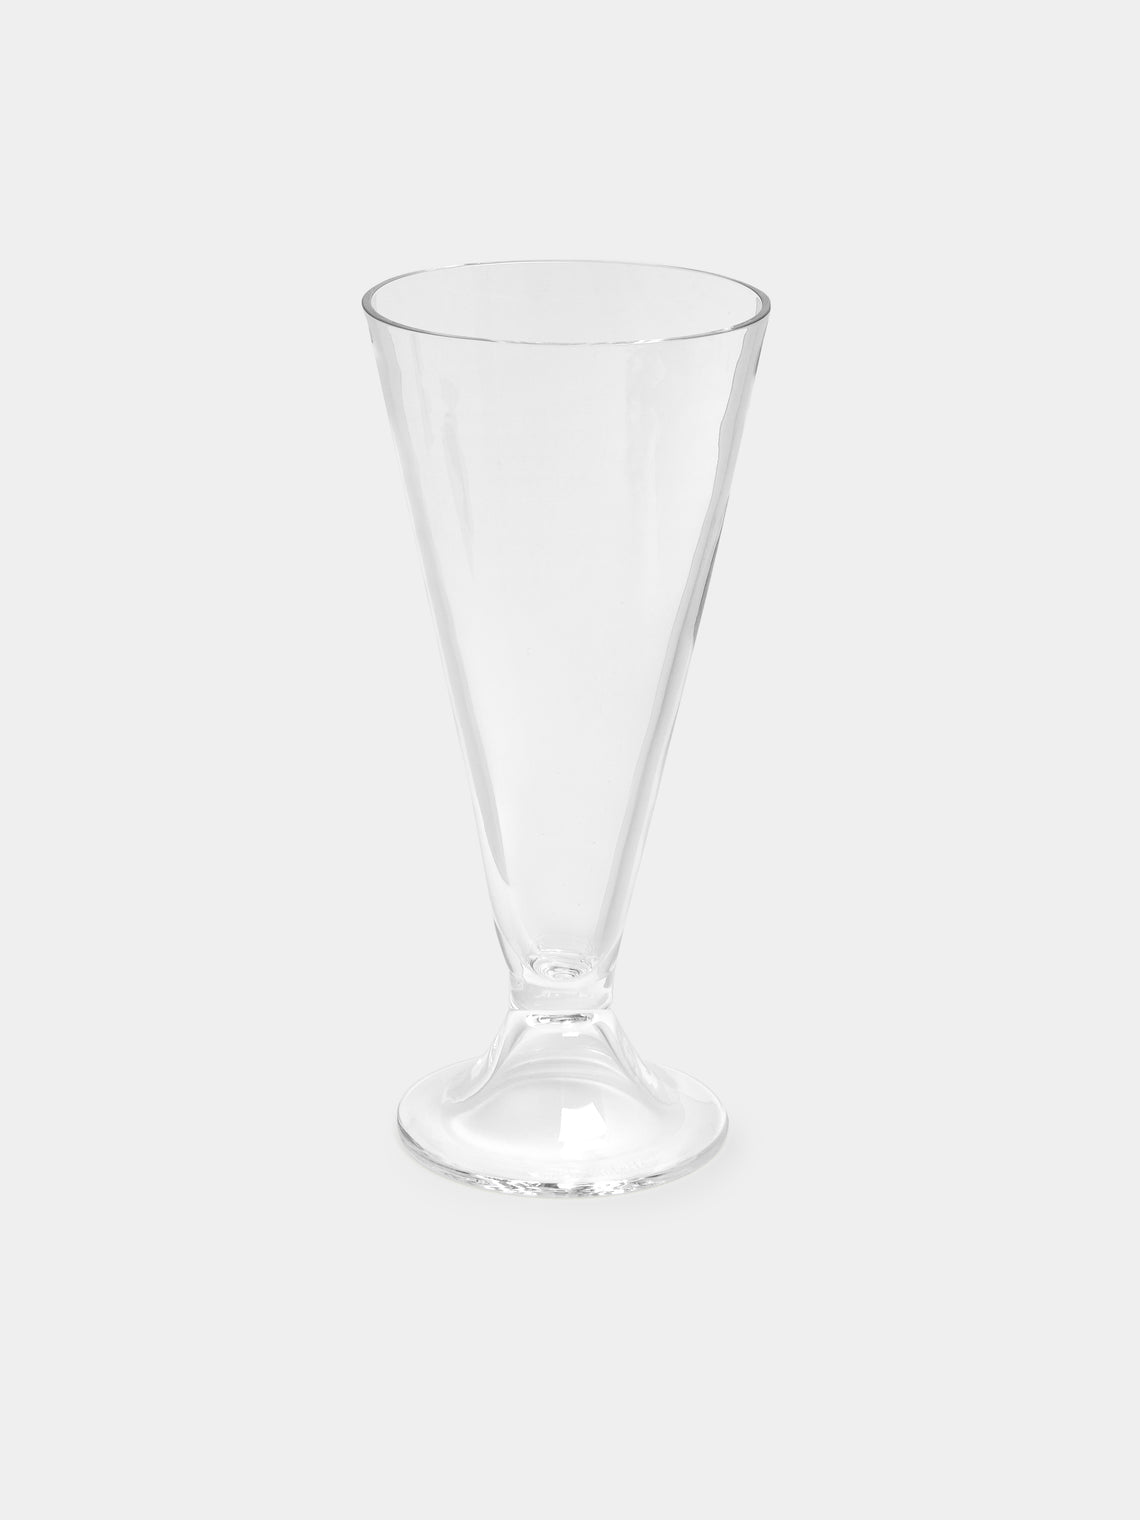 Carlo Moretti - Ovale Hand-Blown Murano Wine Glass - Clear - ABASK - 